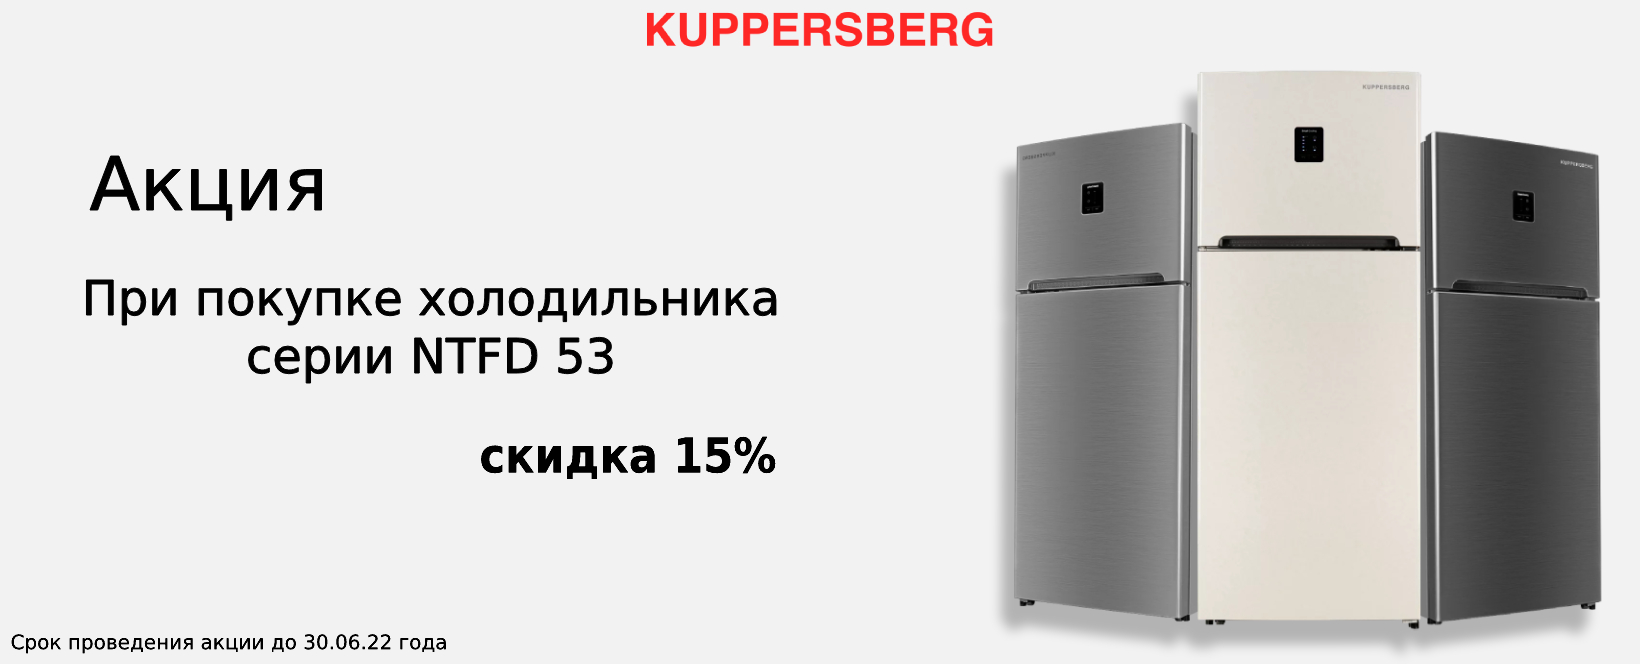 Акция Kuppersberg: скидка на холодильник 15%